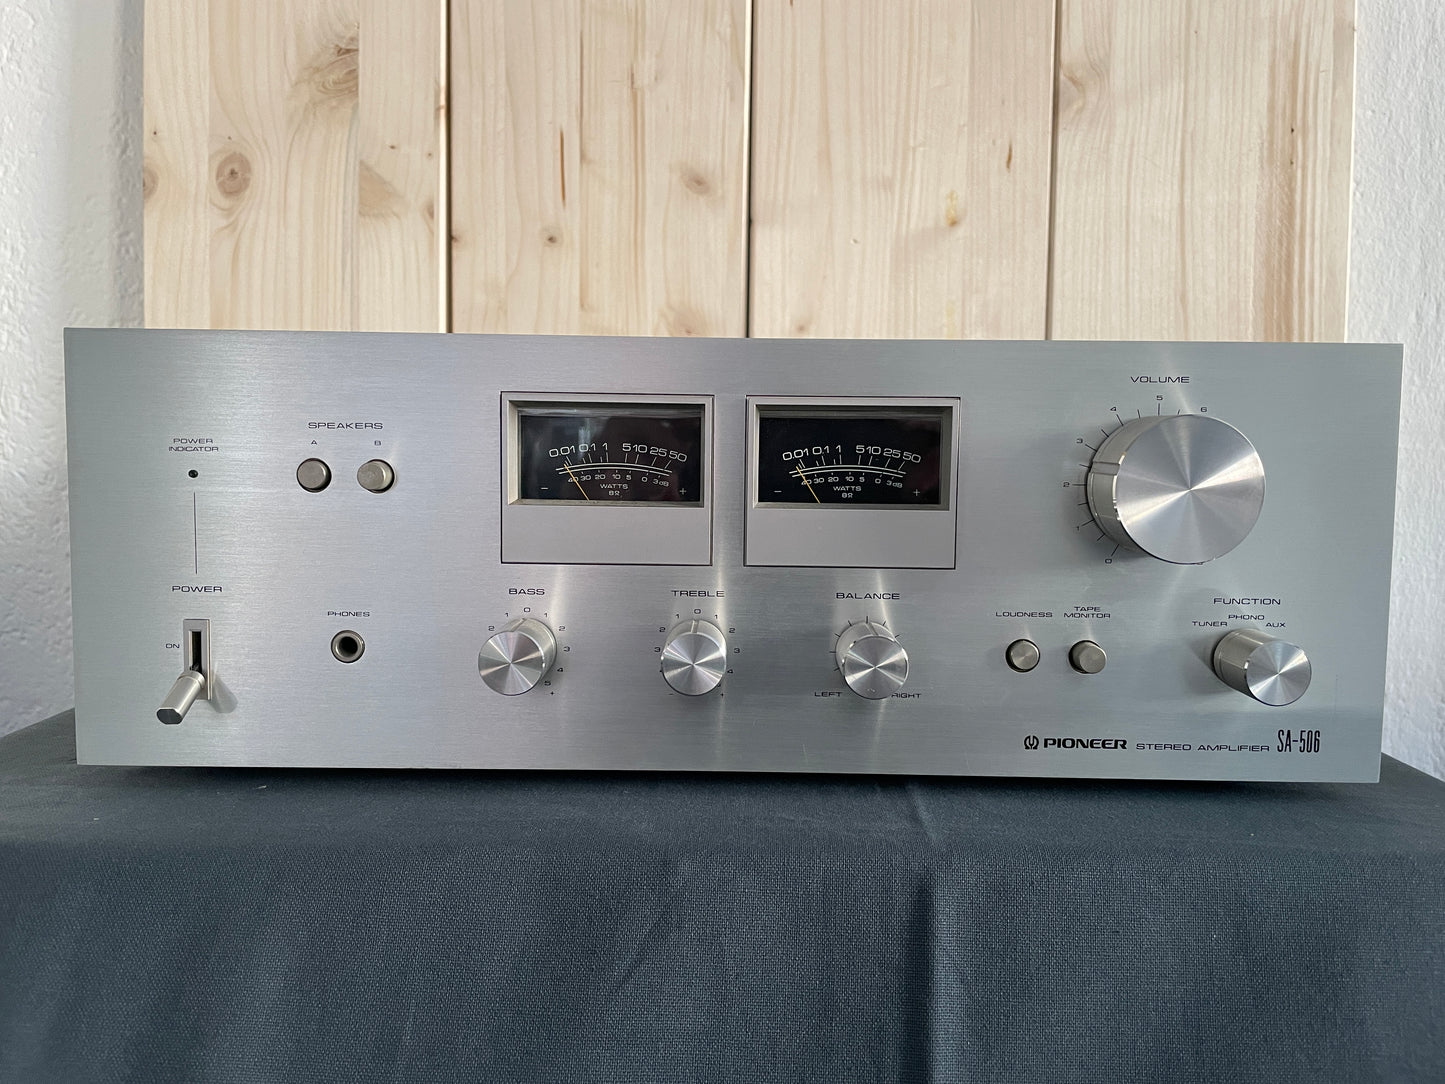 1977 Pioneer SA 506 Amplifier - Japan